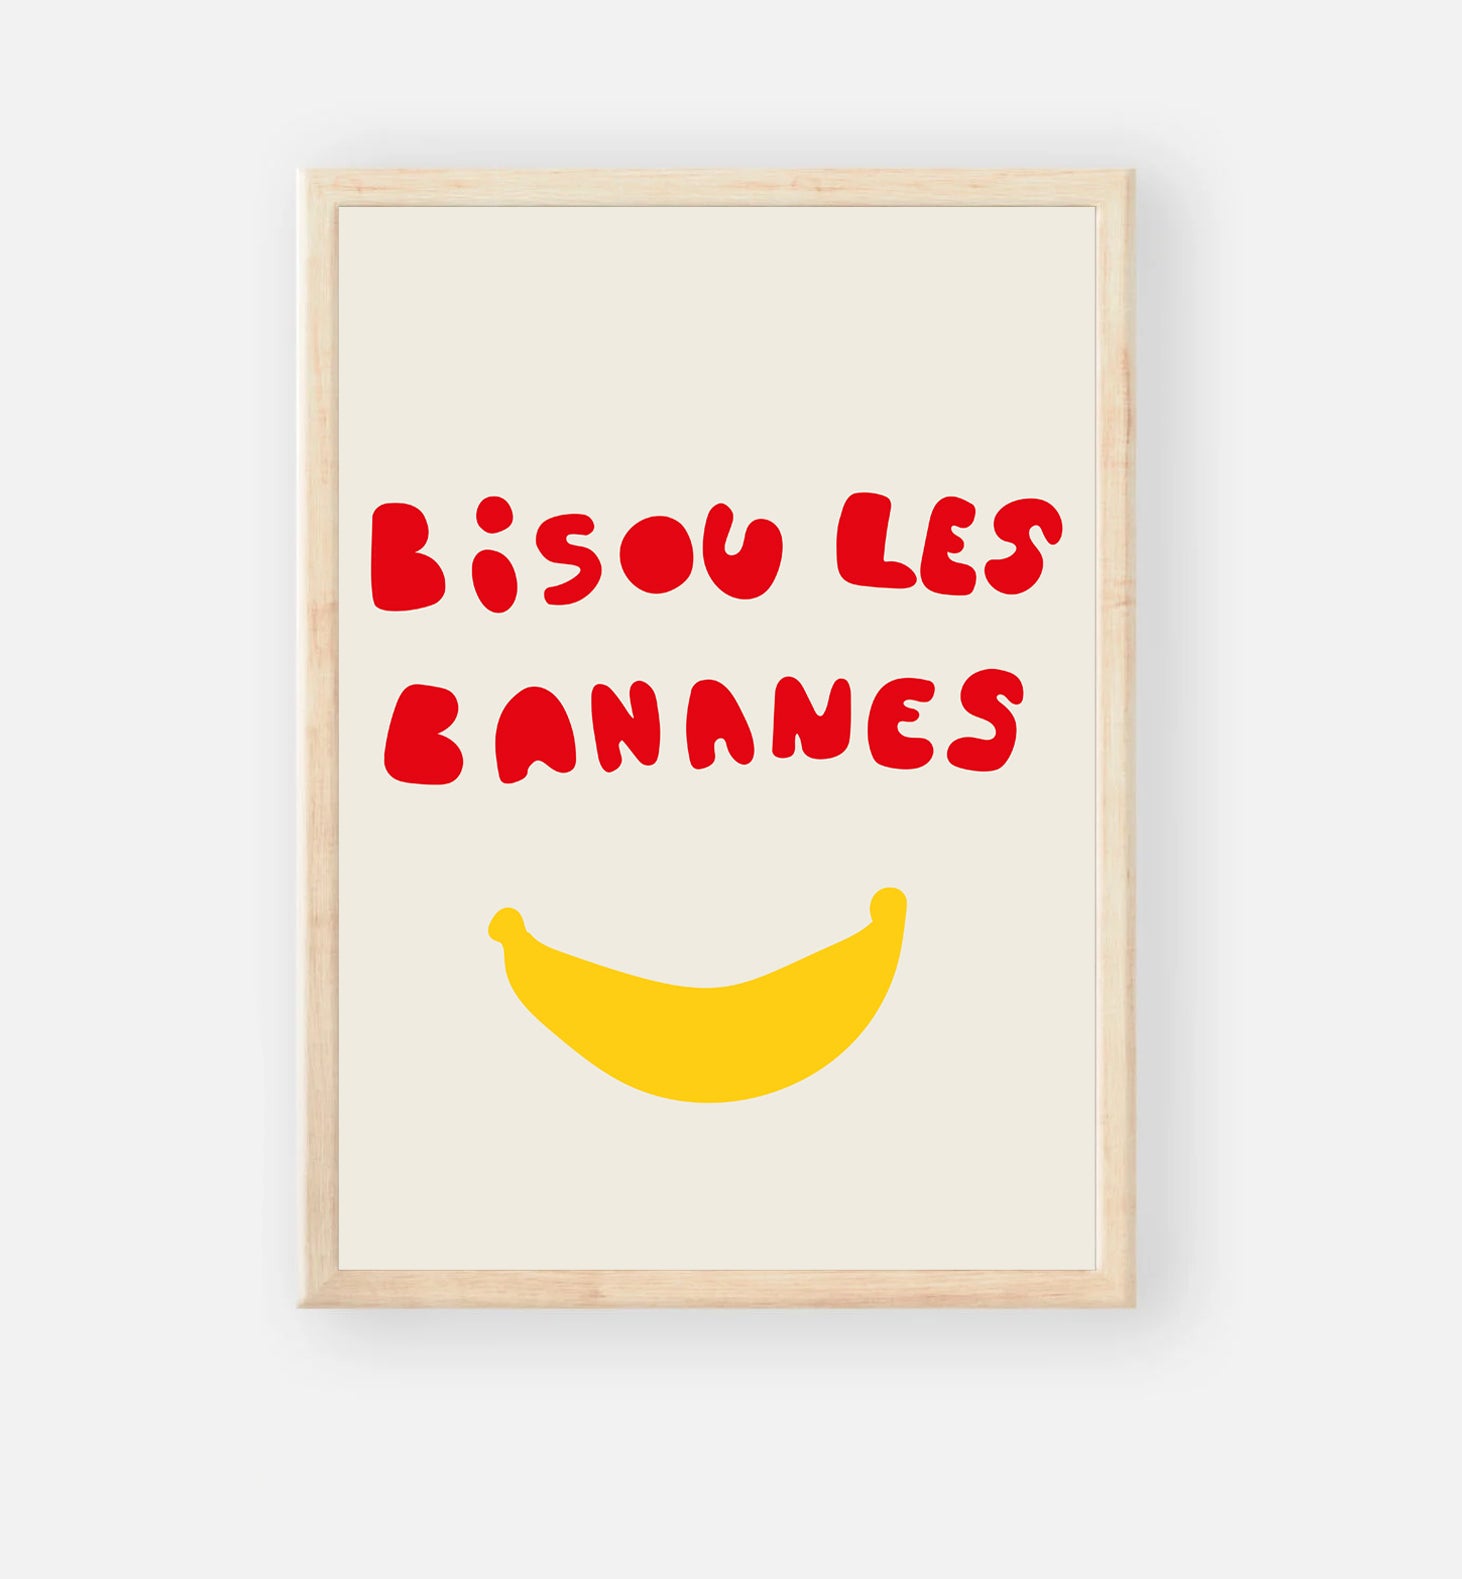 Bisou les bananes - Poster